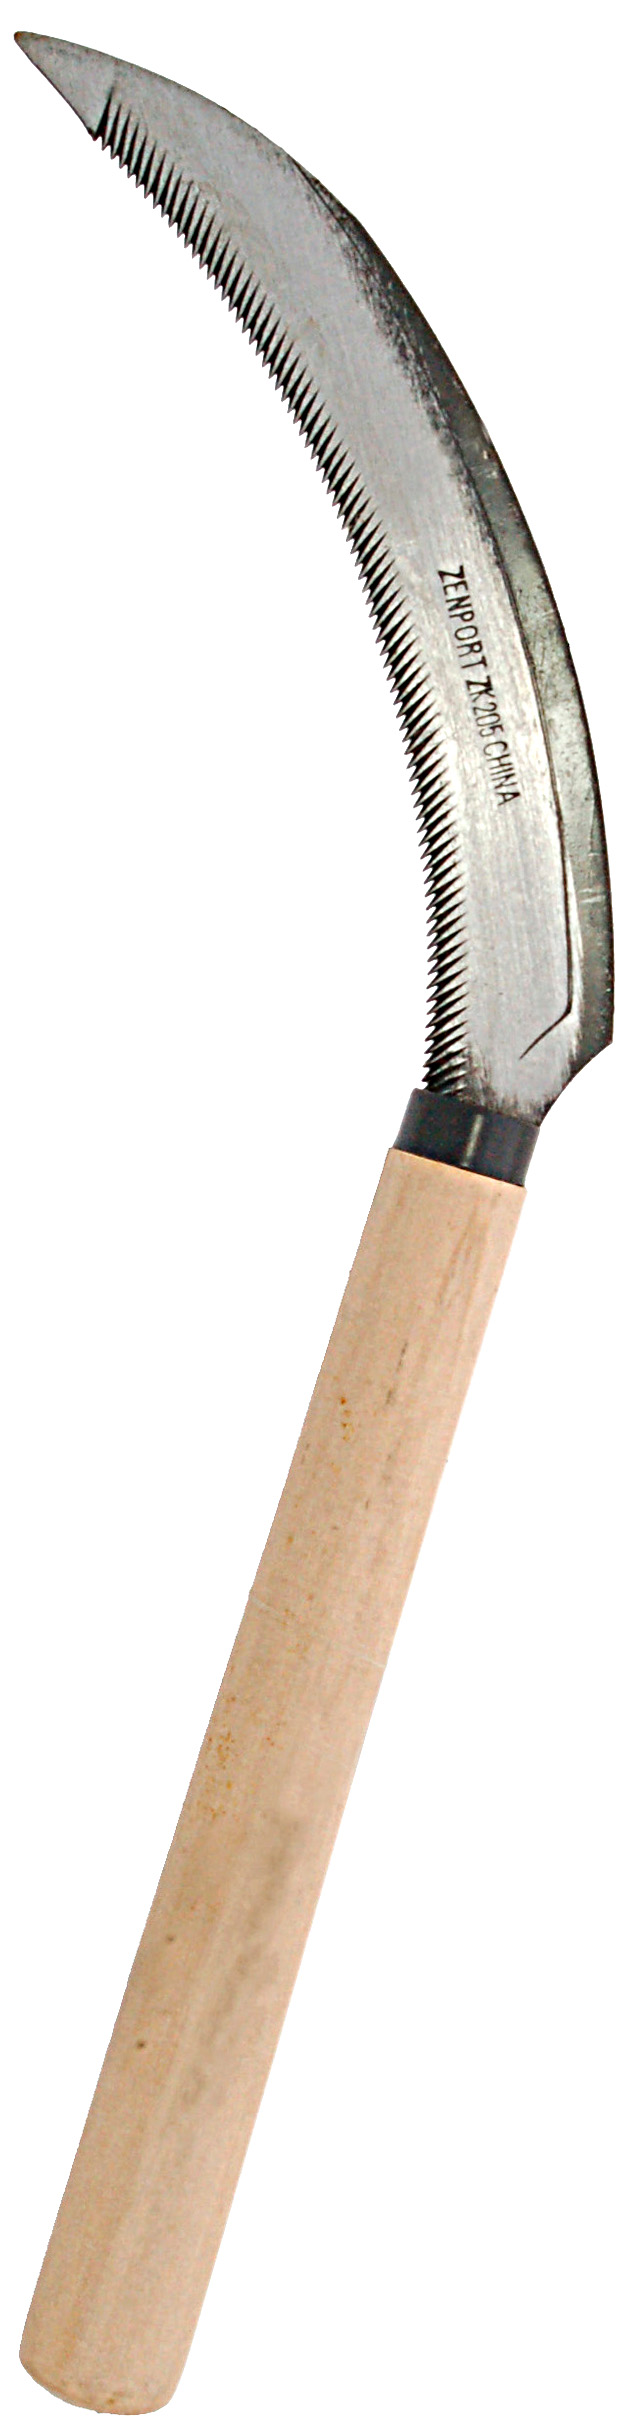 Zenport Sickle K205 Couteau de récolte Faucille de désherbage, Berry Lavender Paysage végétal, Manche en bois, Bord dentelé, La